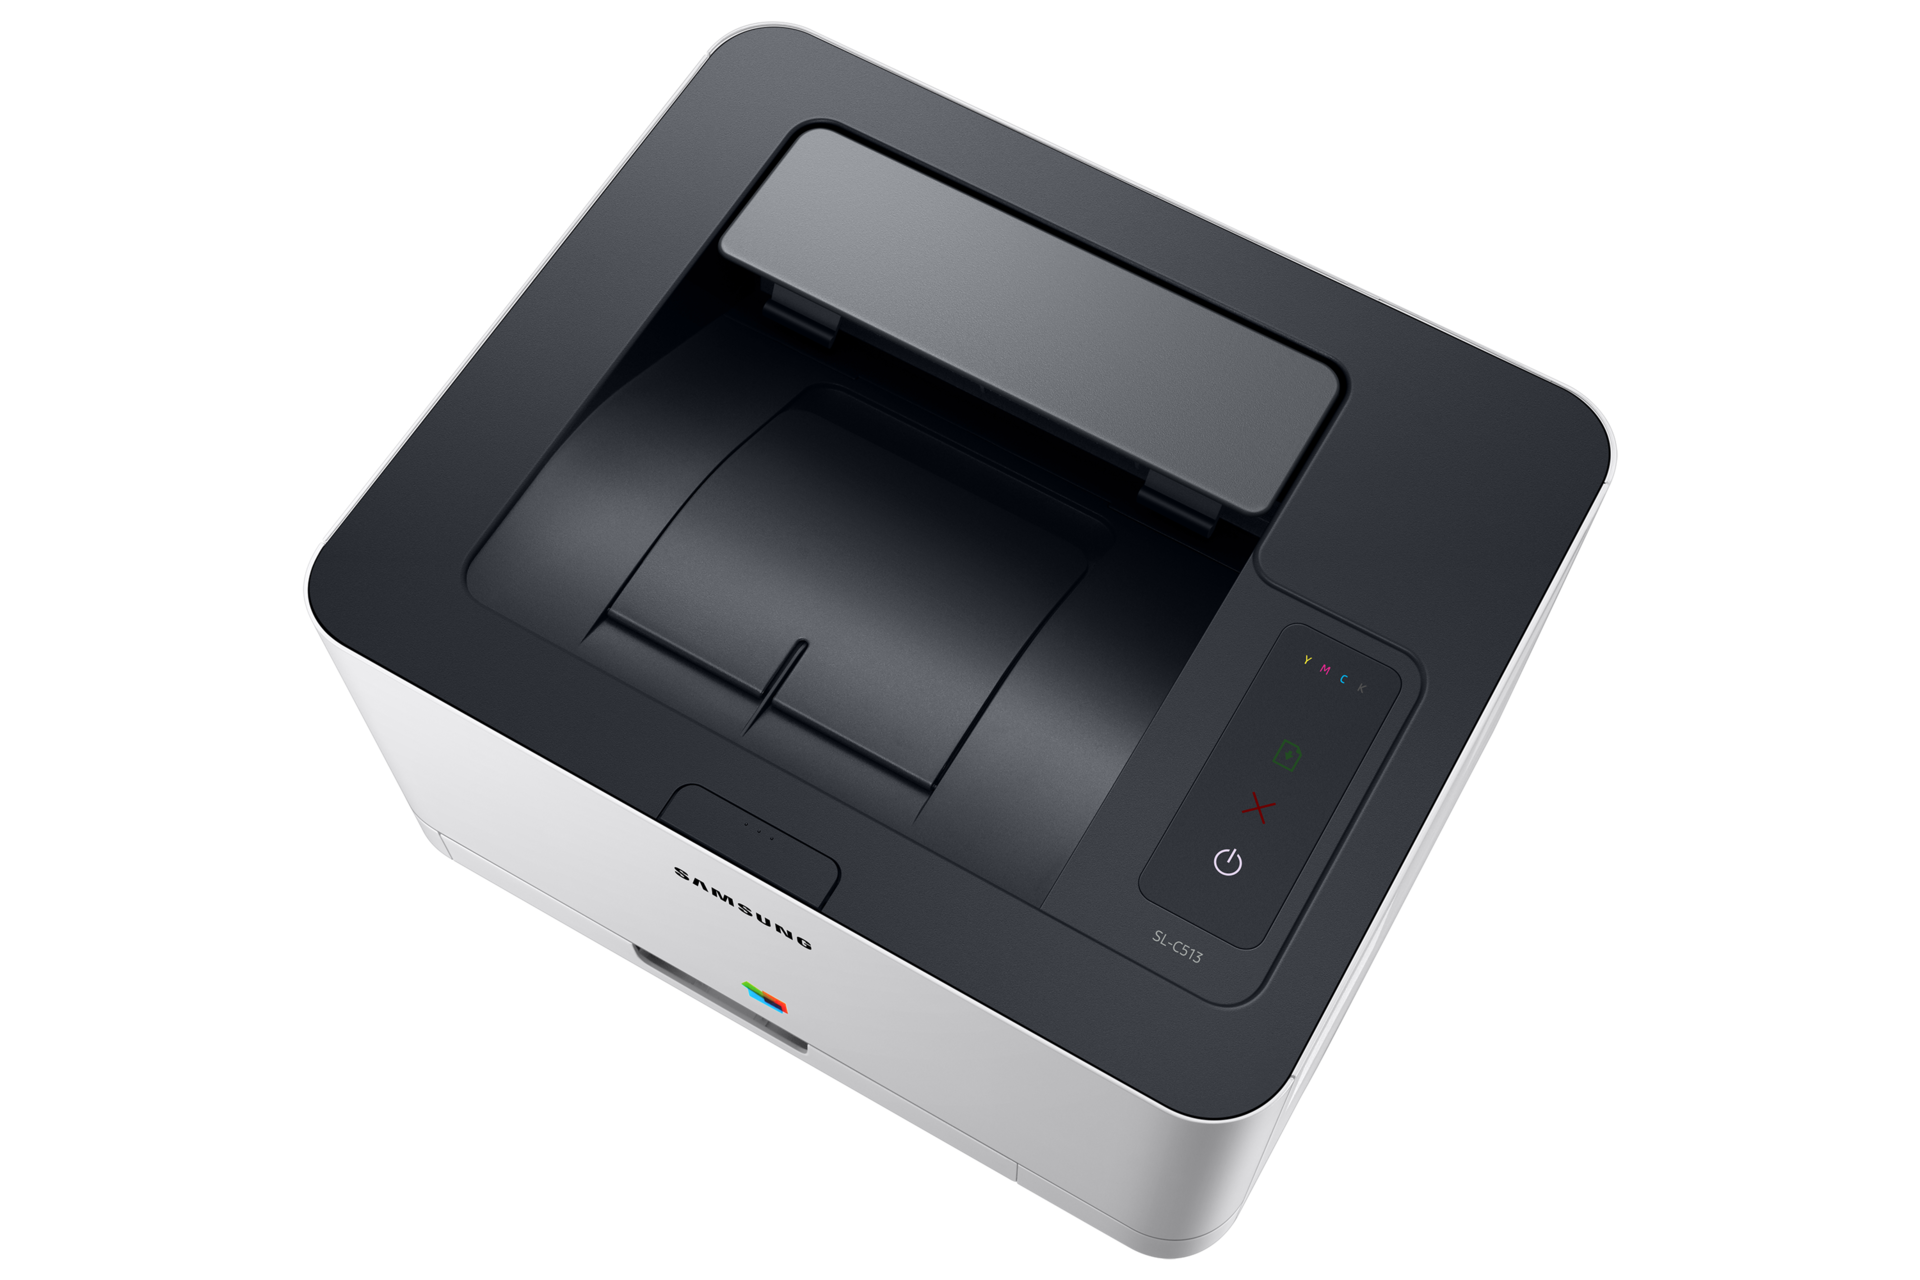 컬러 레이저 프린터 18/4 ppm 그레이 제품 윗면, 조작부 및 용지 배출구 이미지